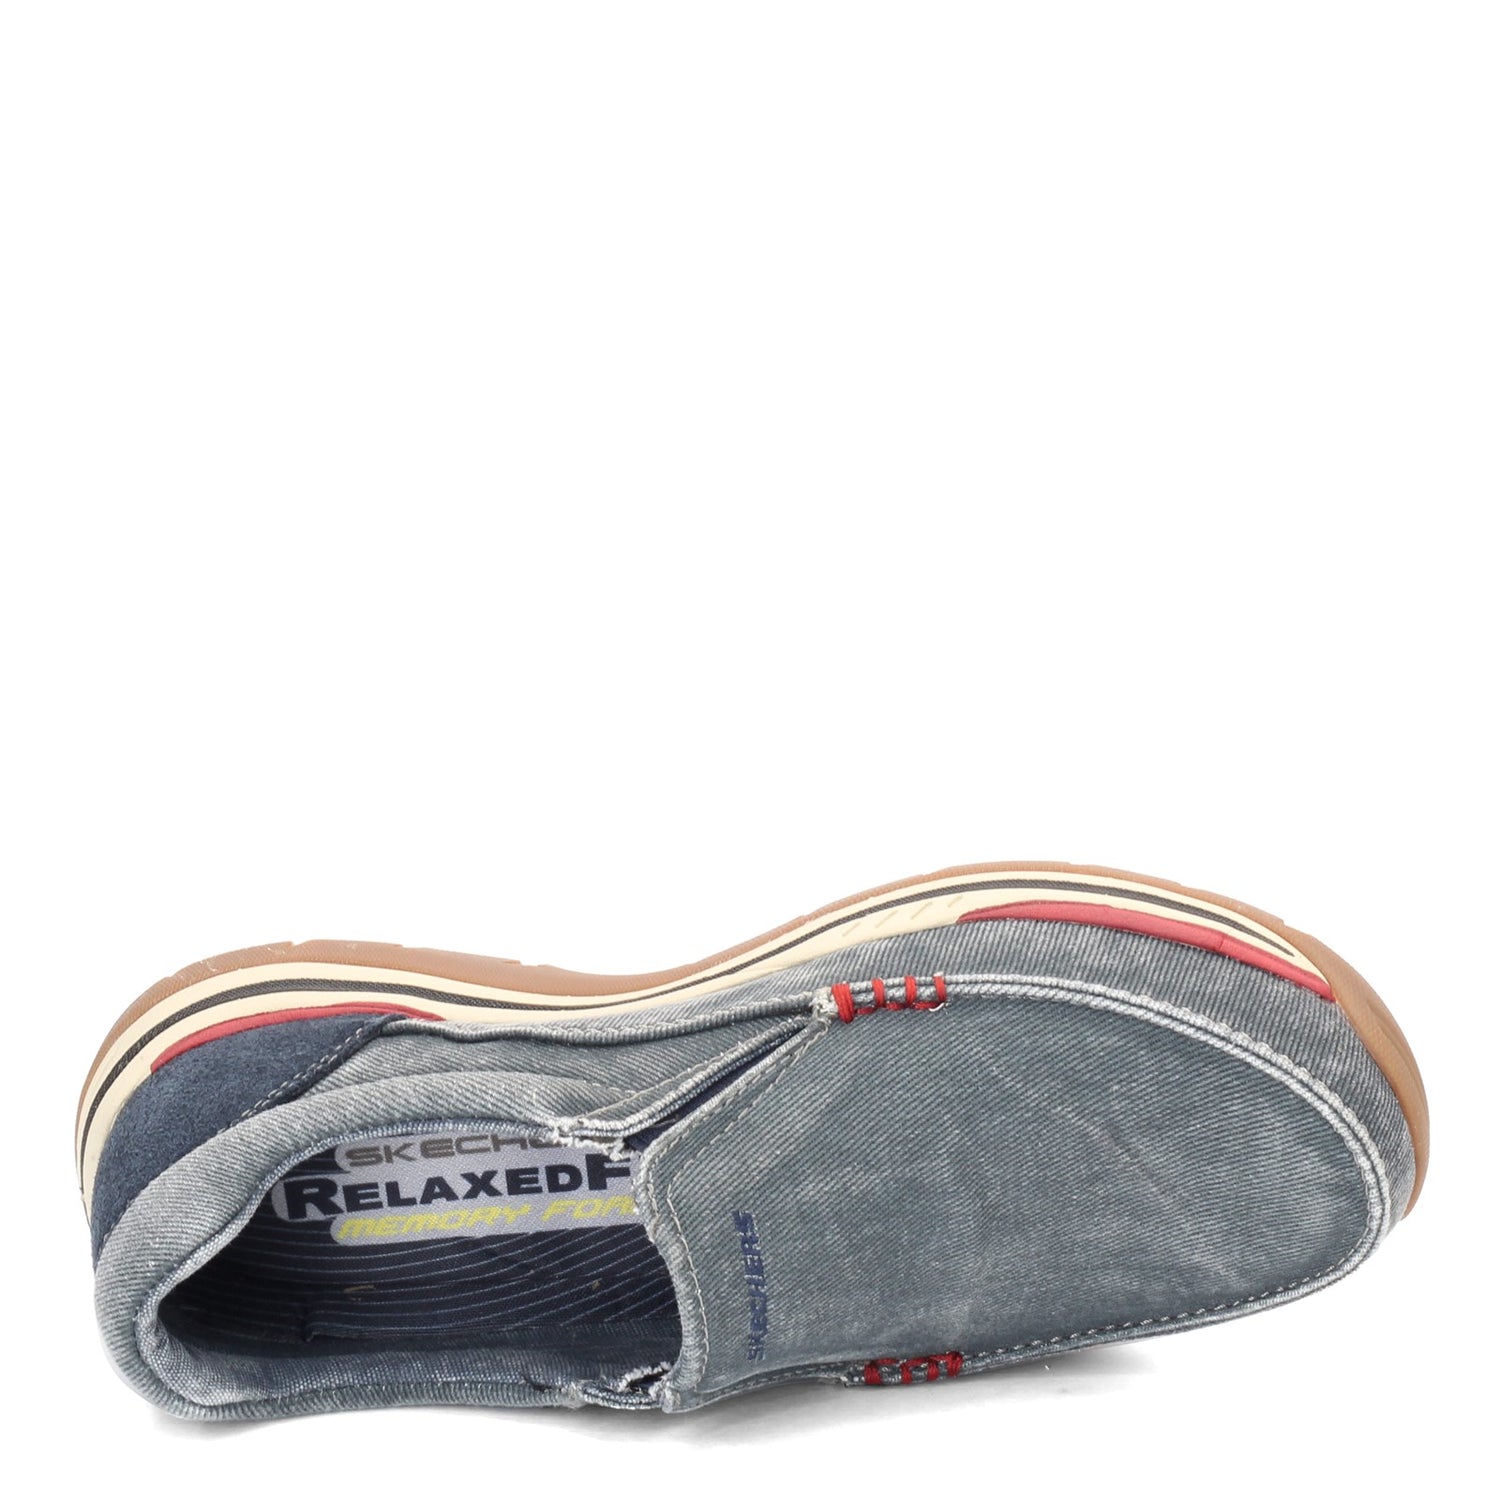 Peltz Shoes  Men's Skechers Relaxed Fit: Expected - Avillo Slip-On NAVY 64109-NVY